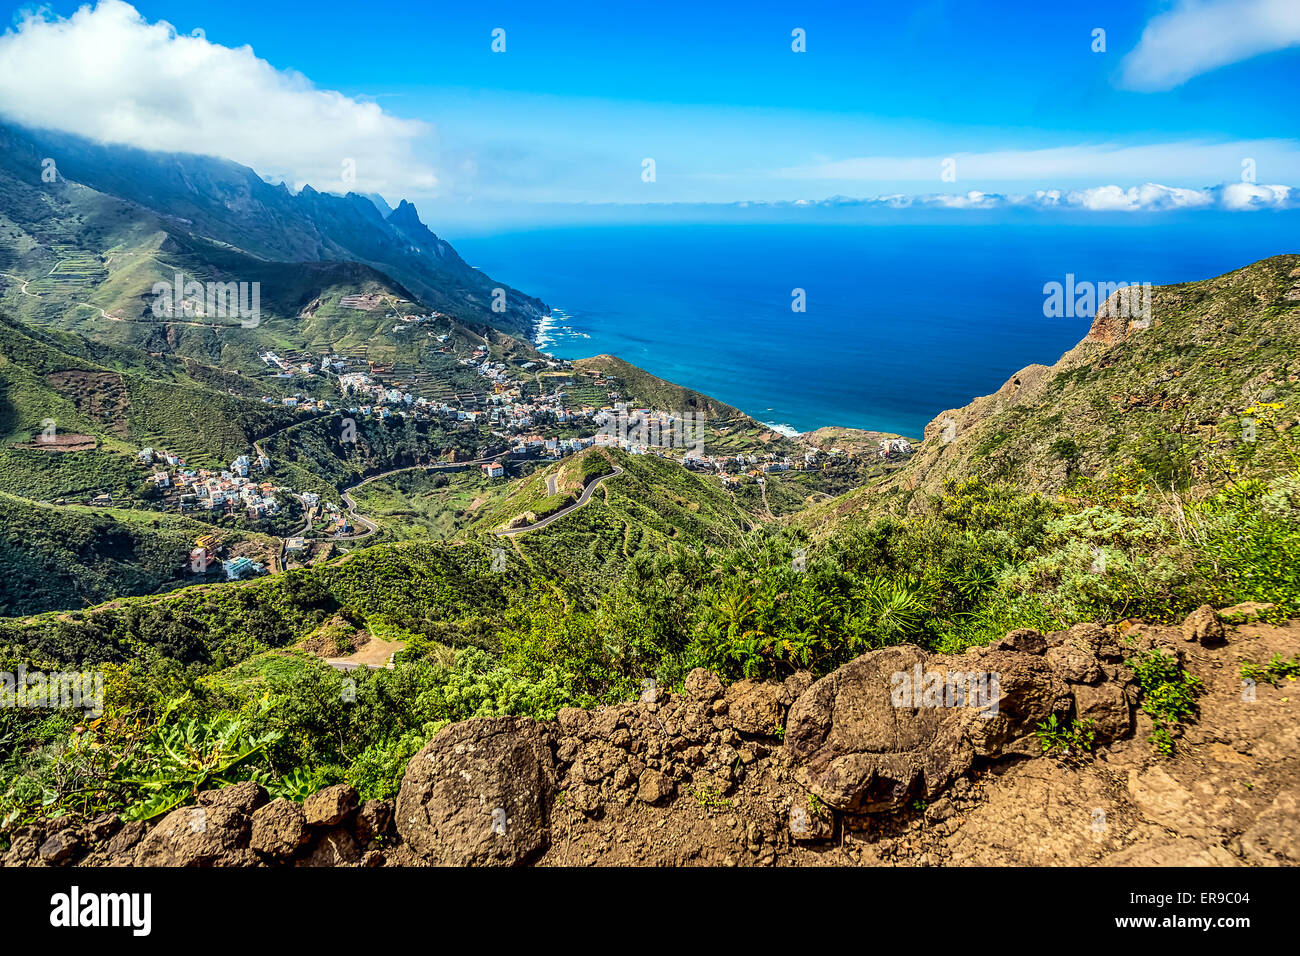 Berge und Wolken mit kleinen Stadt oder Dorf und Himmel Horizont Landschaft in der Nähe der Küste des Ozeans in Teneriffa Kanarische Insel Stockfoto